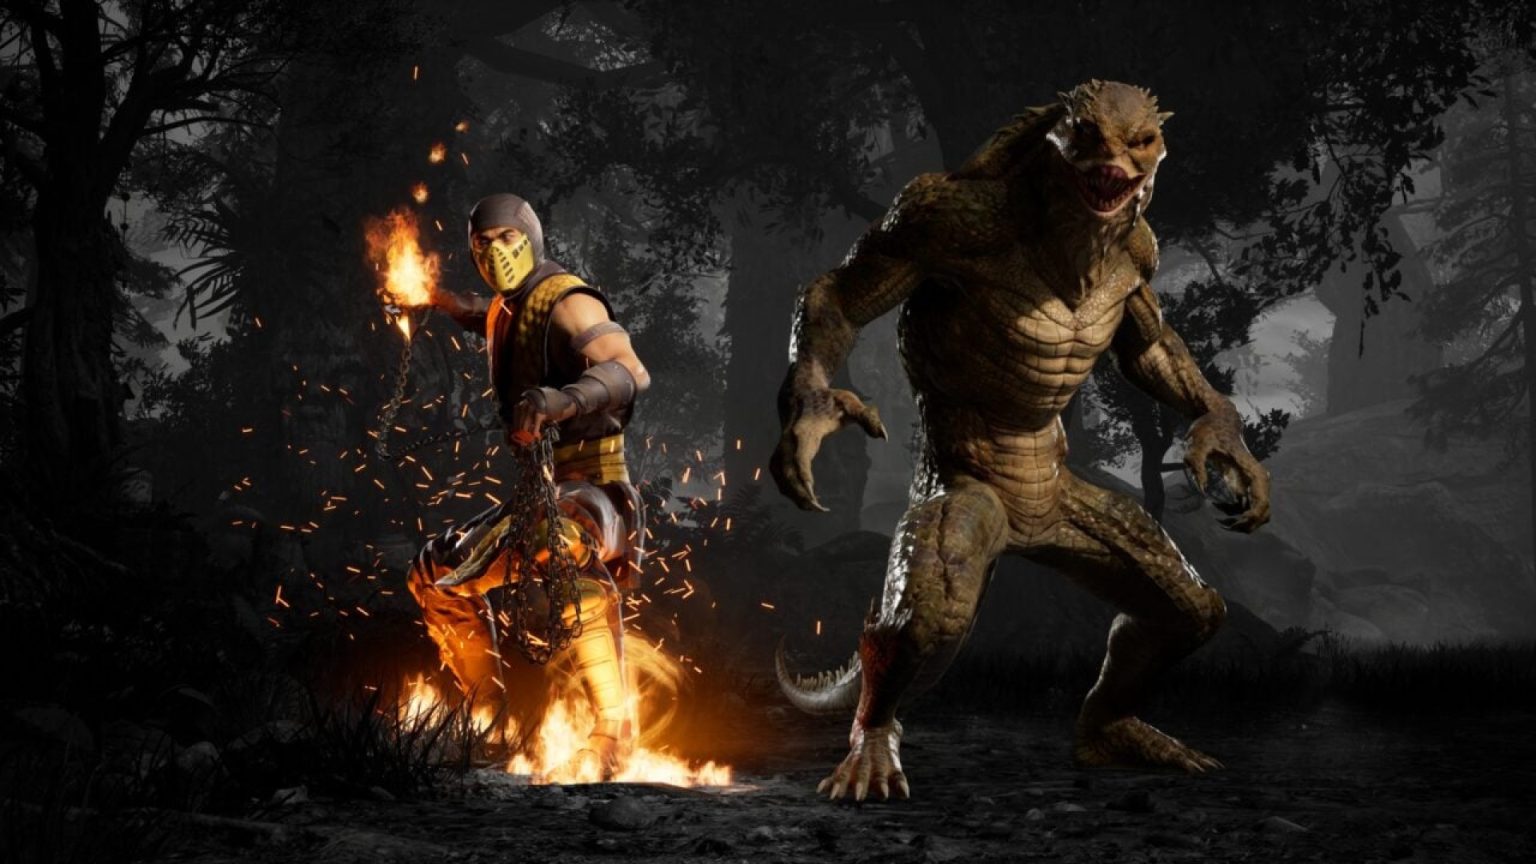 احتمال اضافه شدن کاراکتر Ghostface به بازی Mortal Kombat 1 در قالب یک DLC